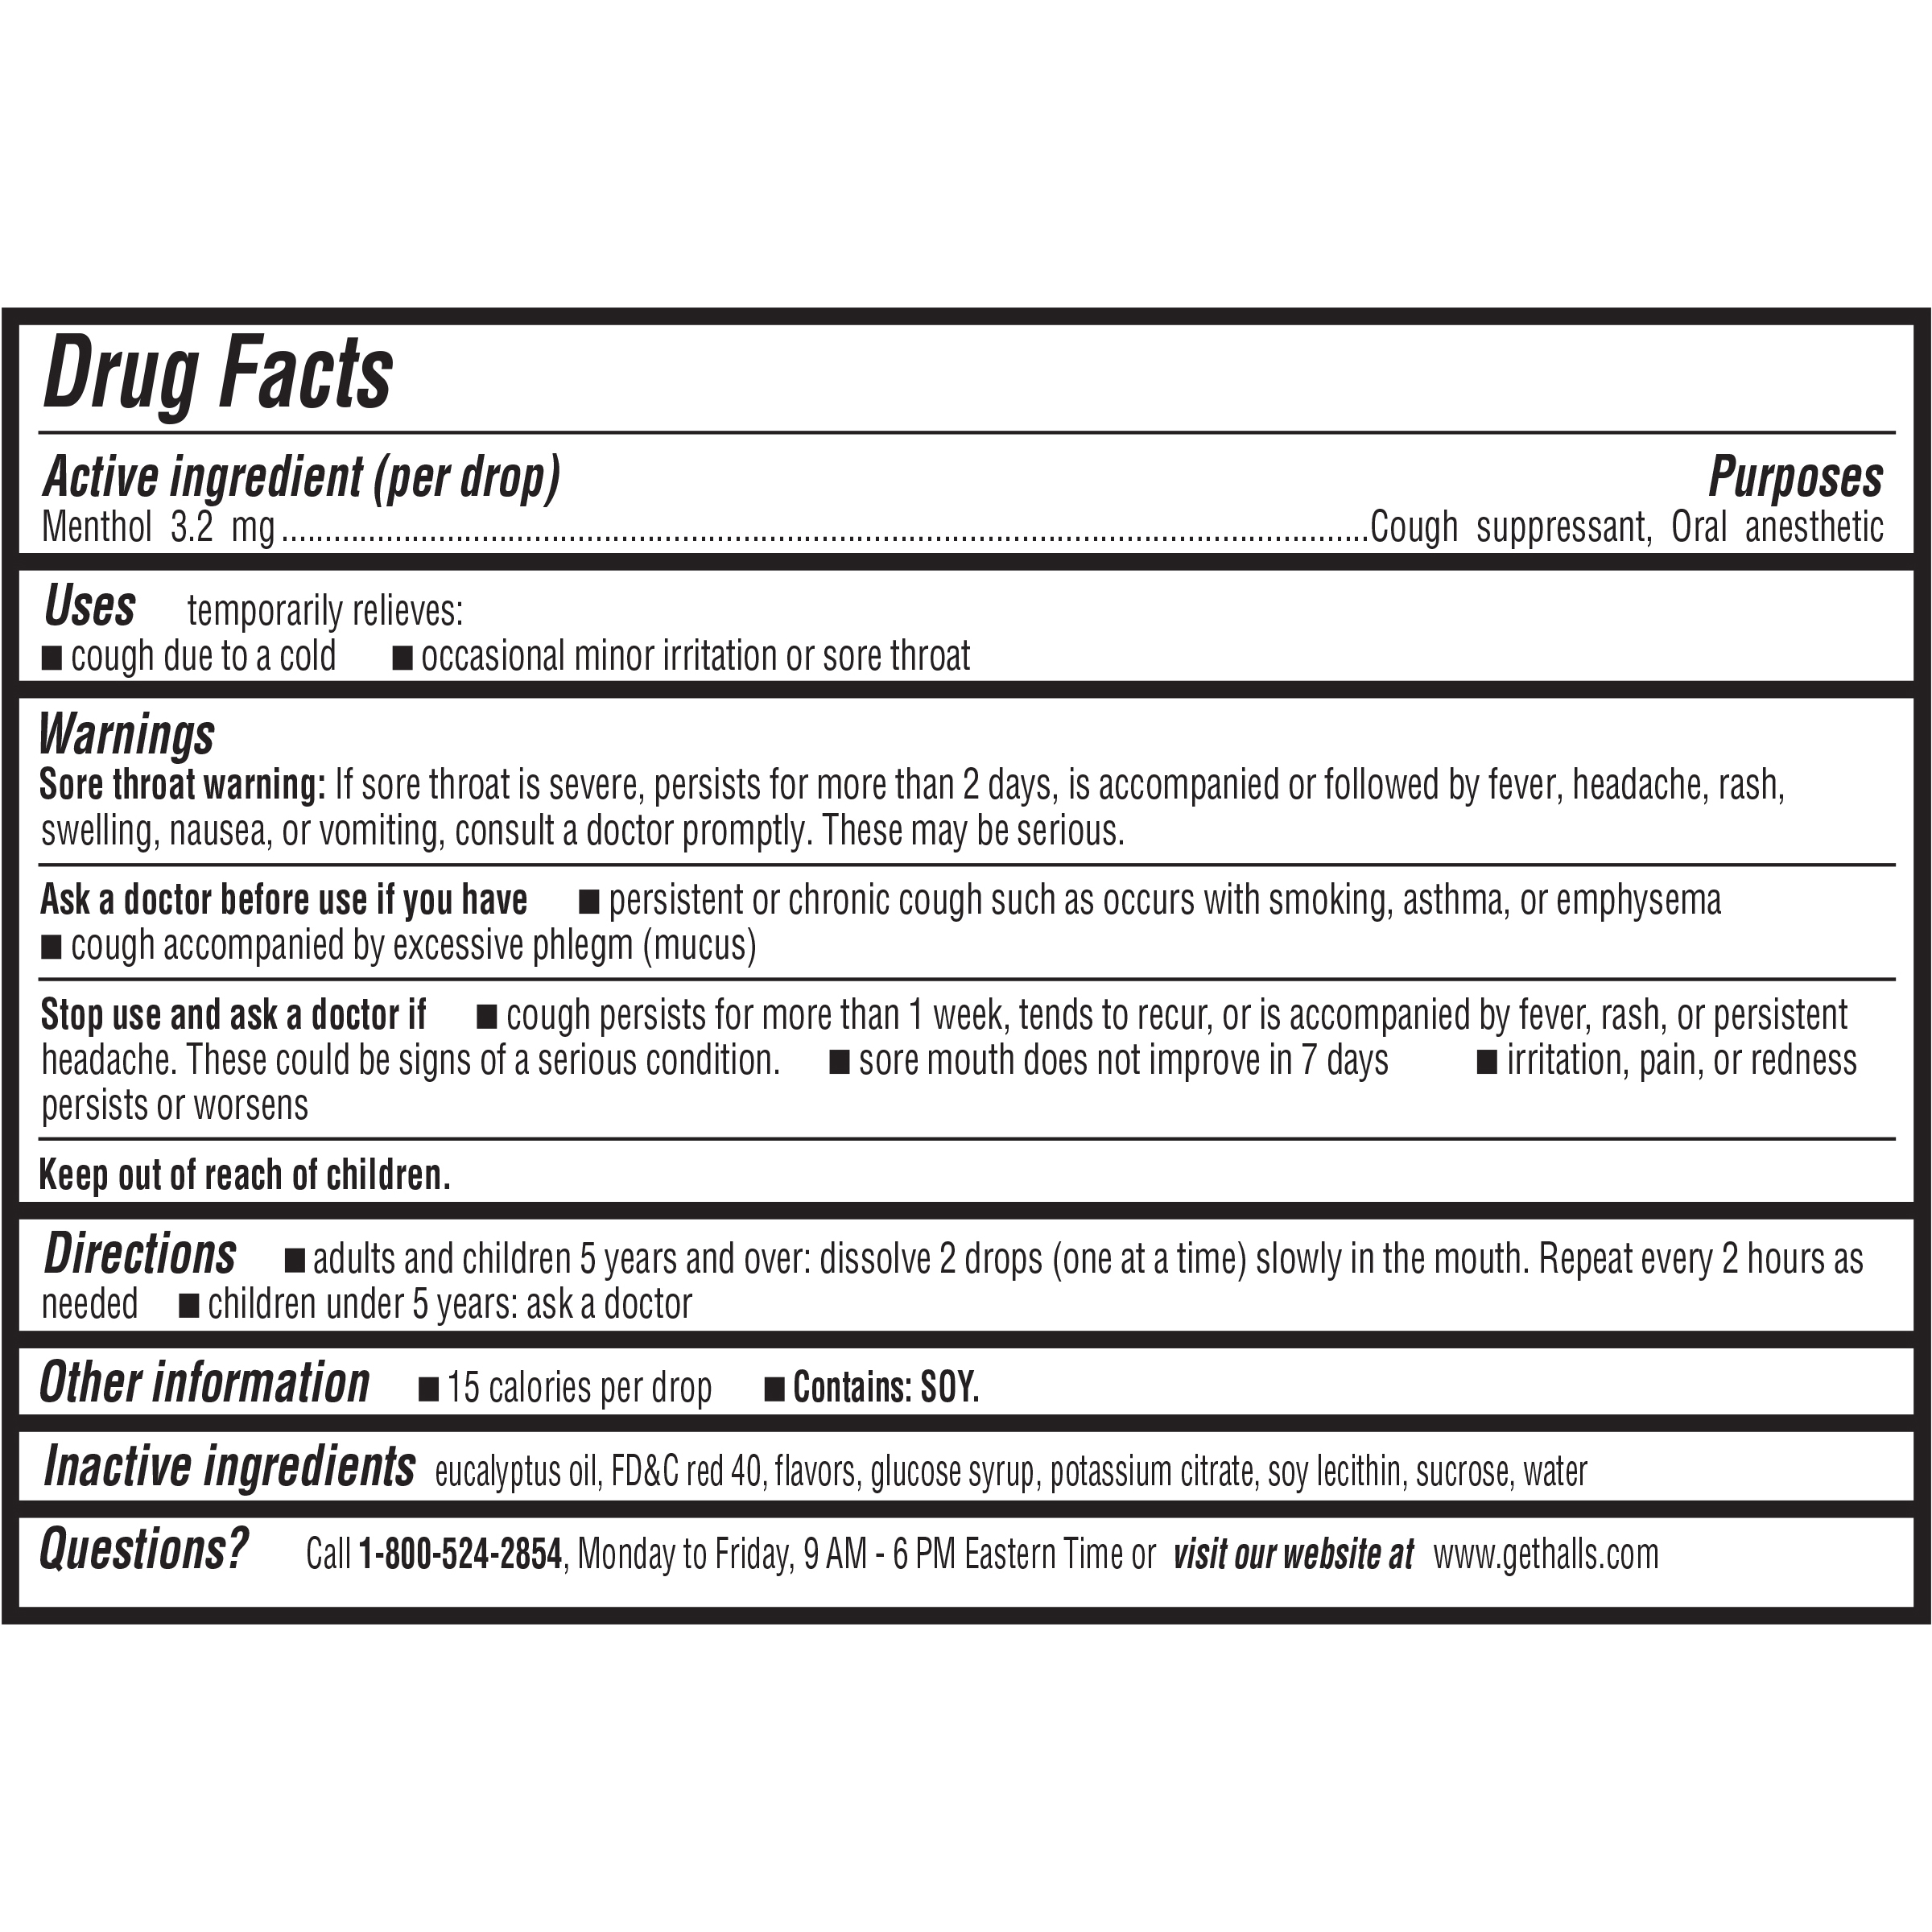 Drug_Facts_Image_url Image